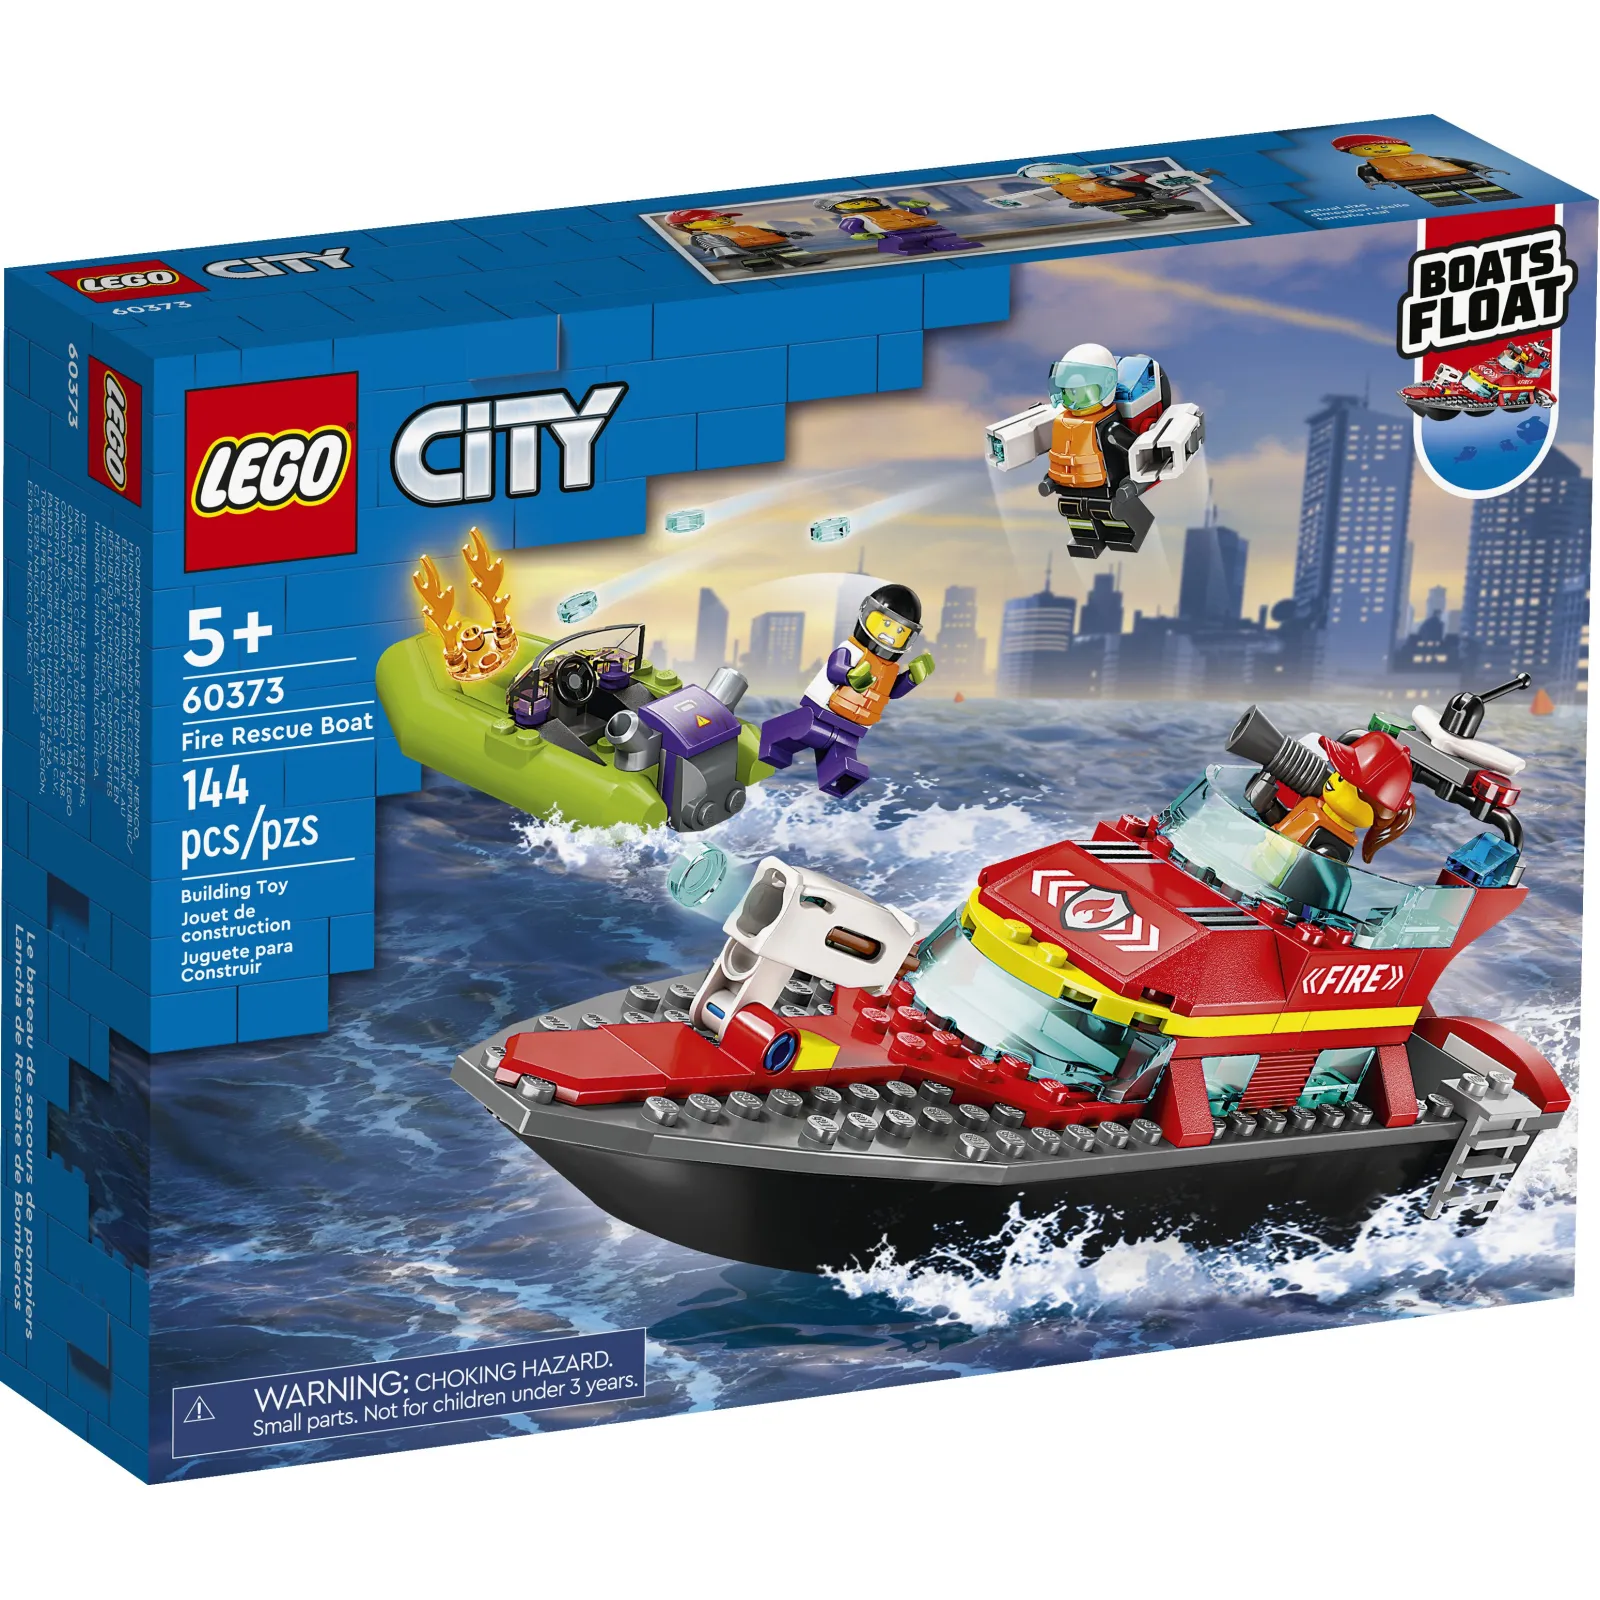 Конструктор LEGO City Океан: исследовательская подводная лодка 286 деталей (60264)